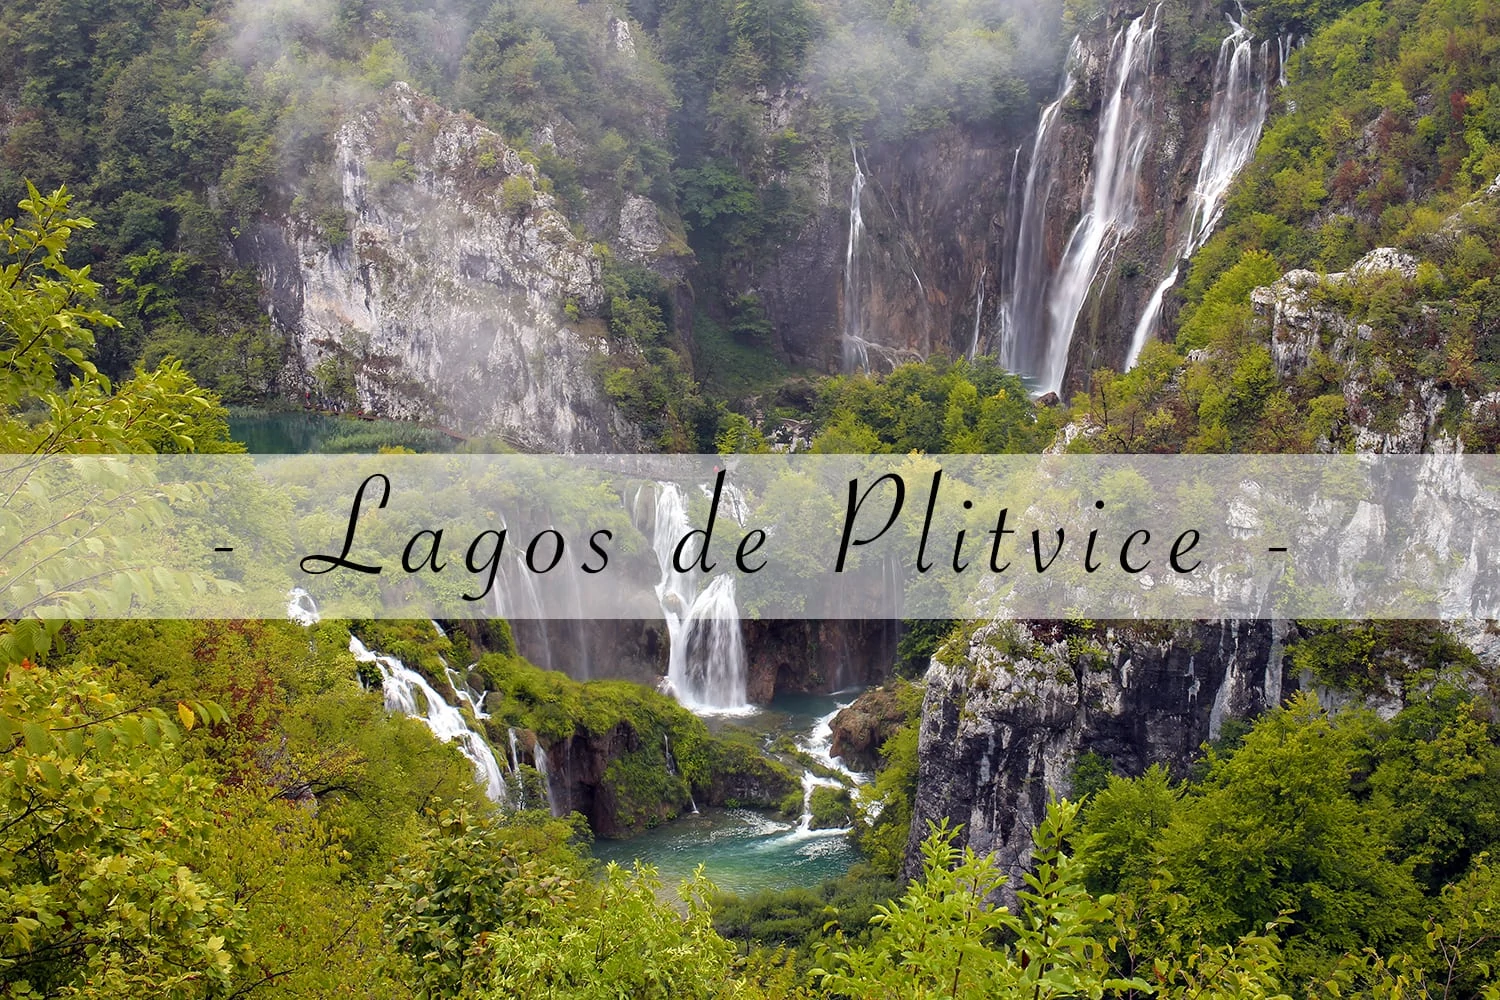 Parque Nacional dos Lagos de Plitvice